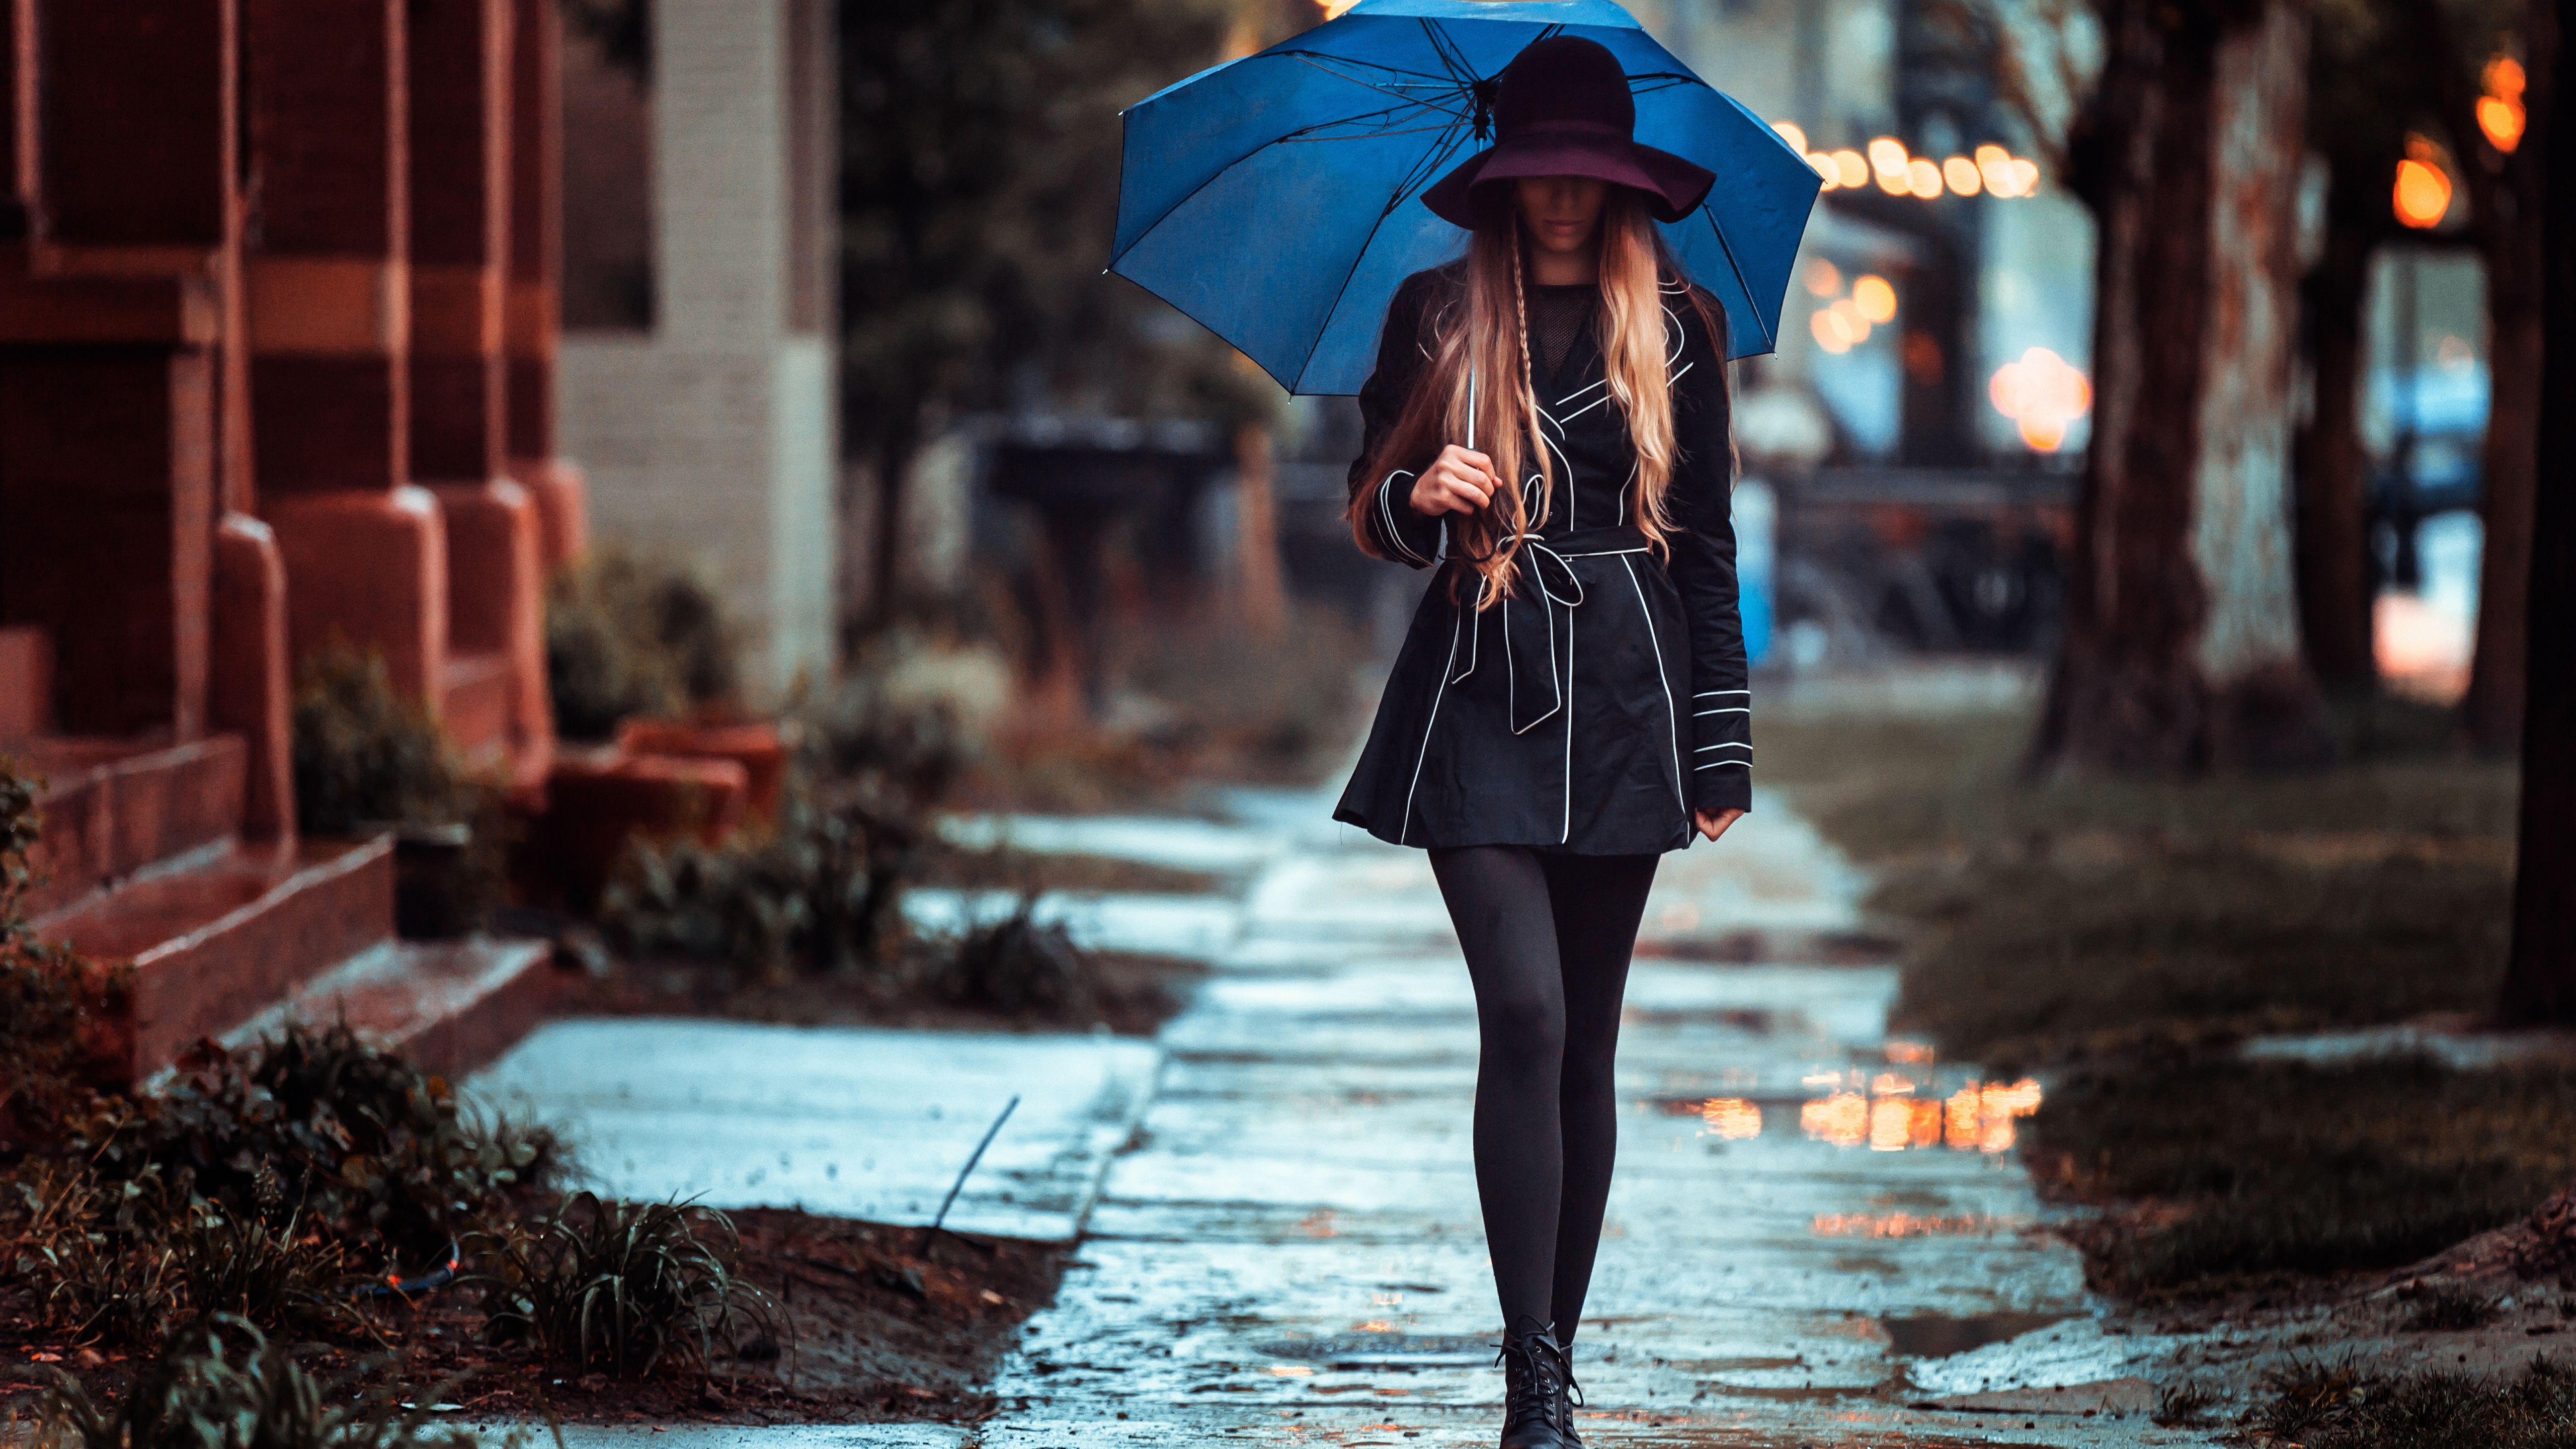 Картинка: Девушка, плащ, шляпа, зонт, идёт, улица, мокрый асфальт, дождь